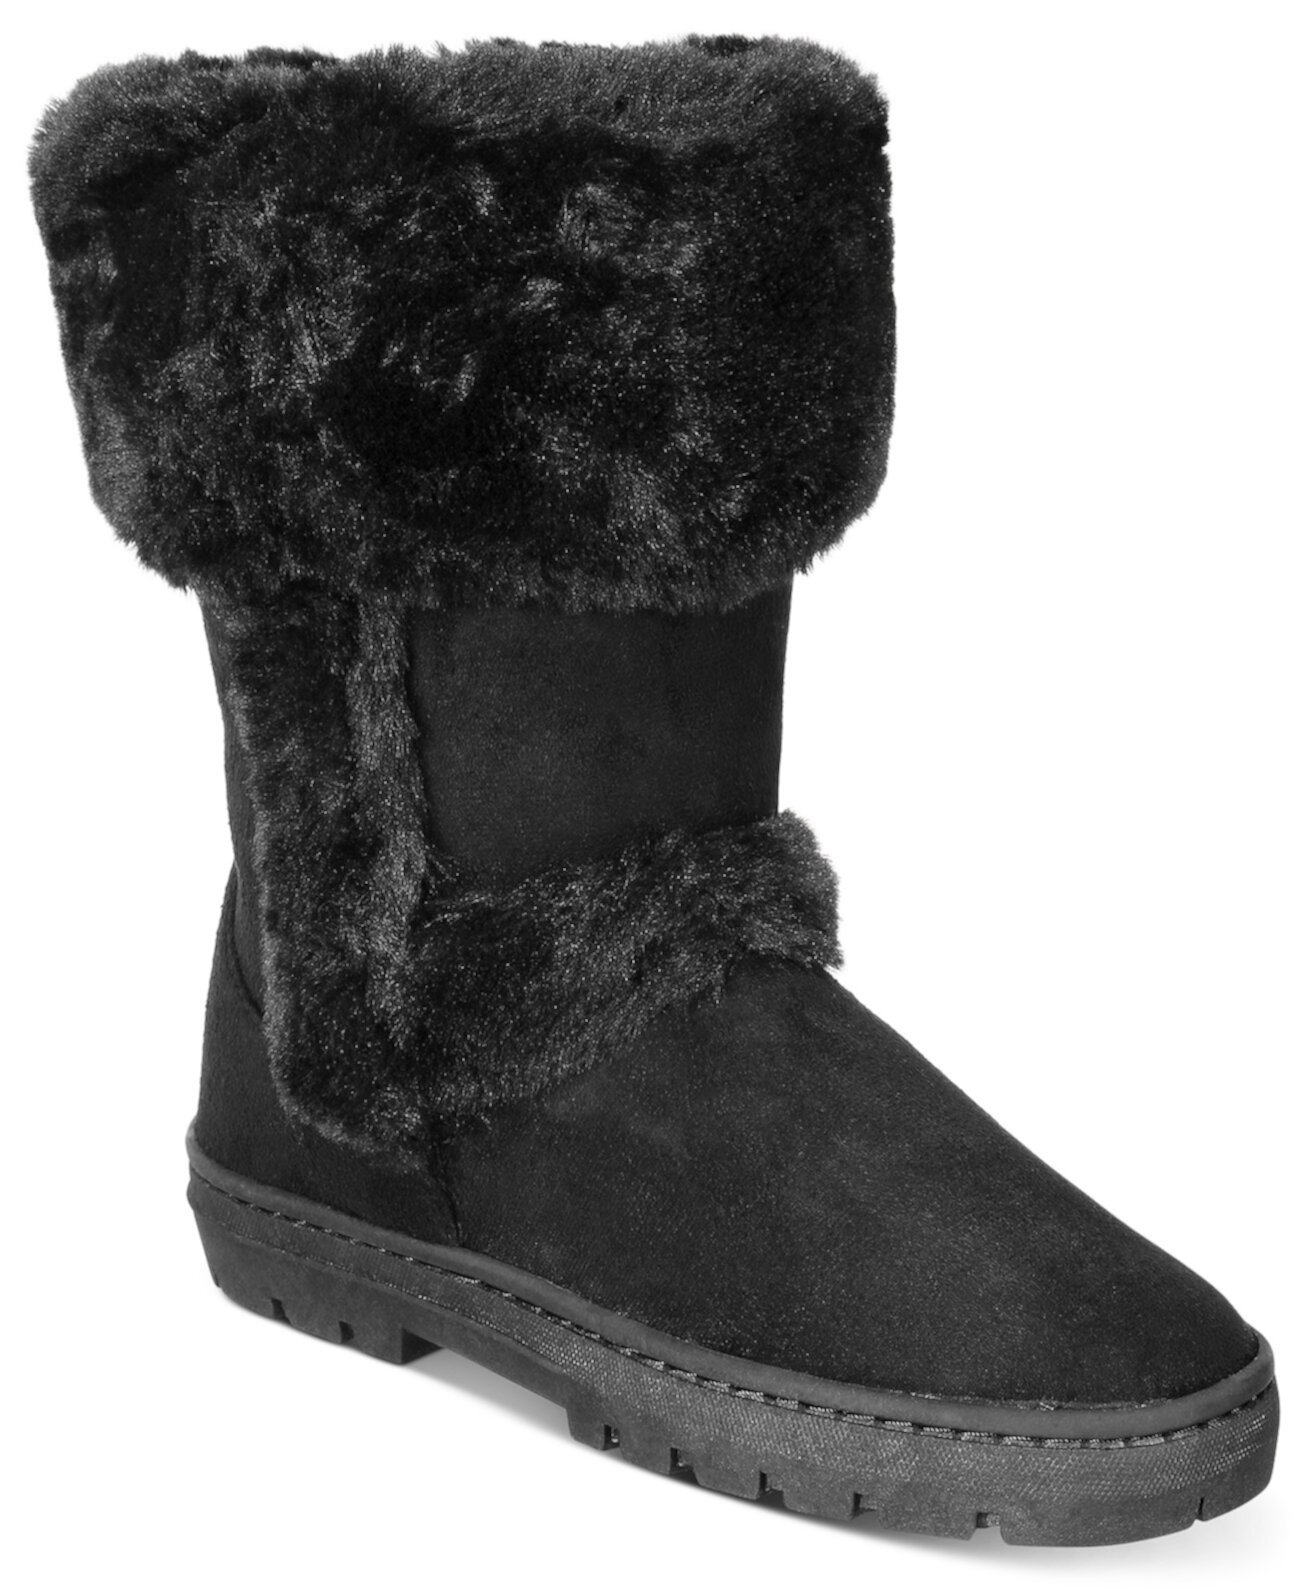 Остроумные ботинки для холодной погоды, созданные для Macy's Style & Co